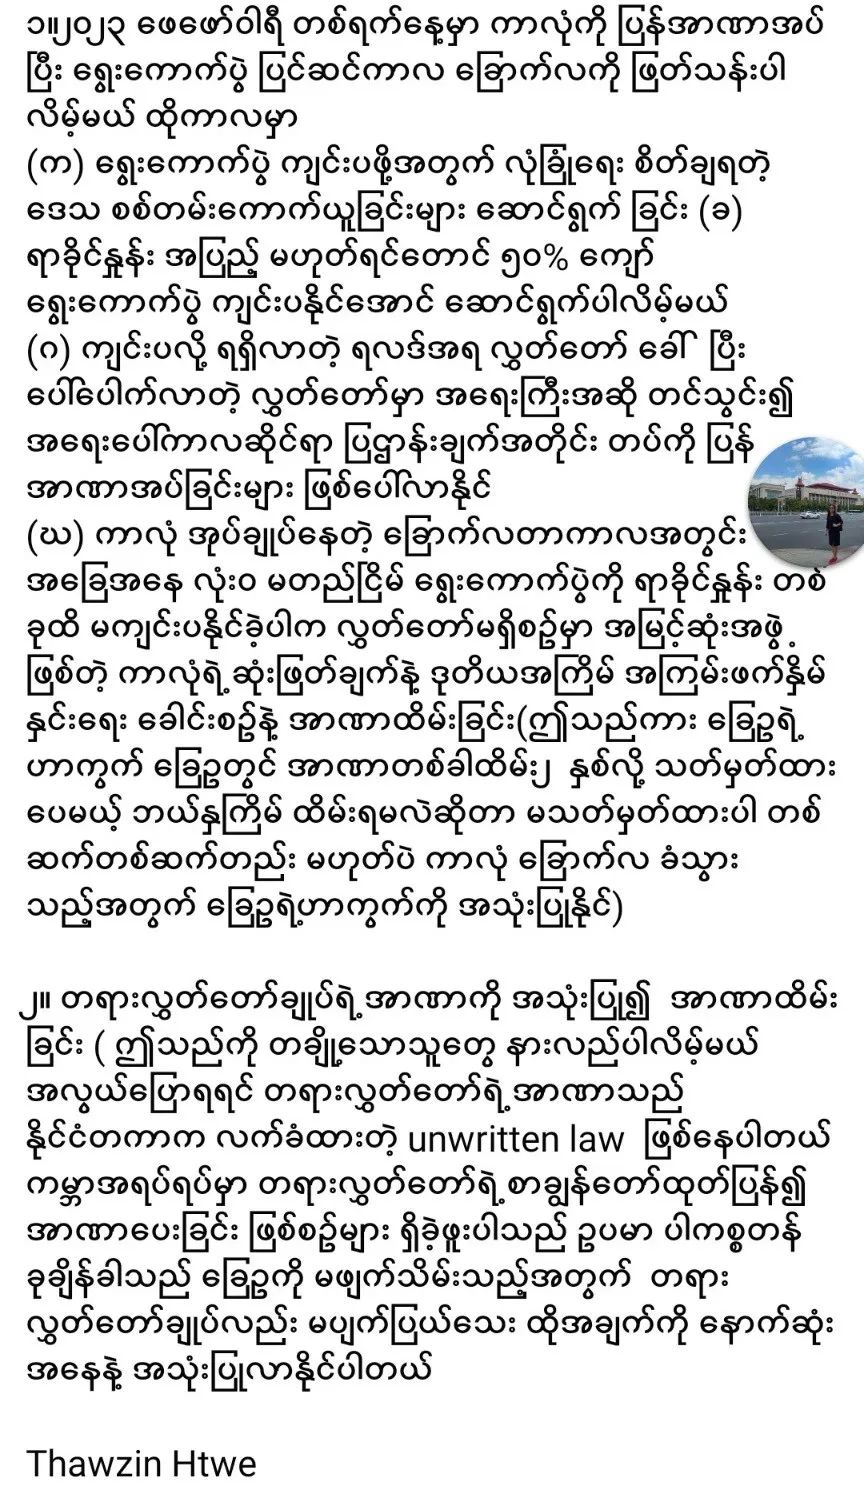 拥军人士对2023年缅甸政局的预测和警告